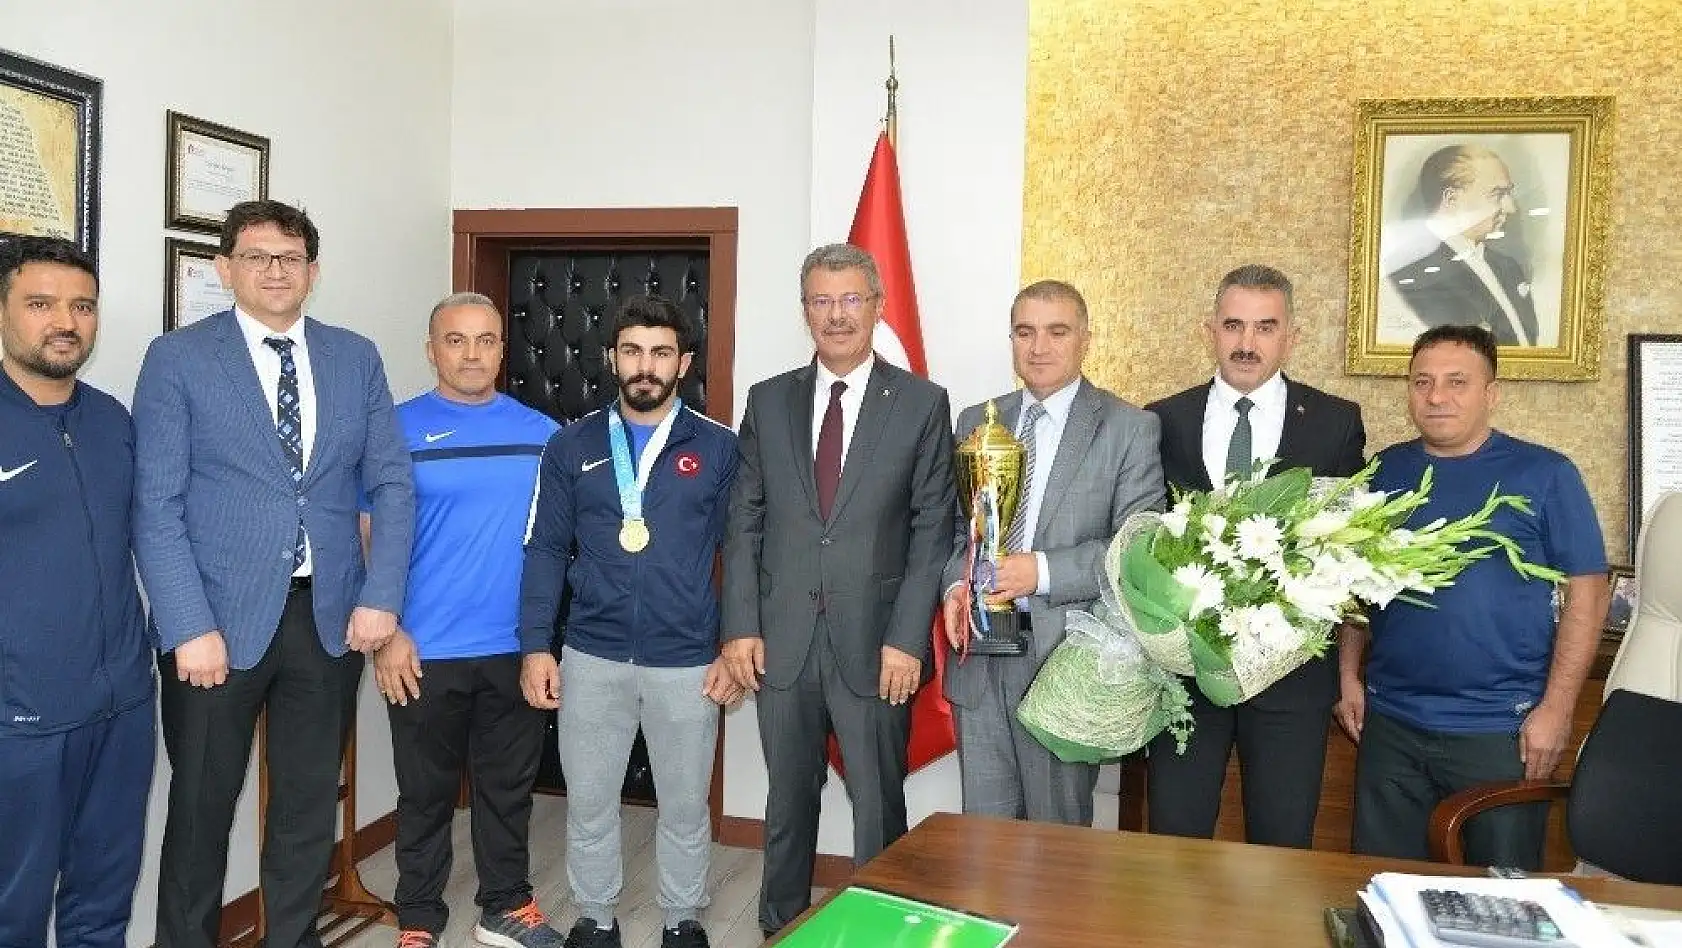 Şekersporlu Milli Güreşçi Fatih Cengiz birincilik kupasını aldı
